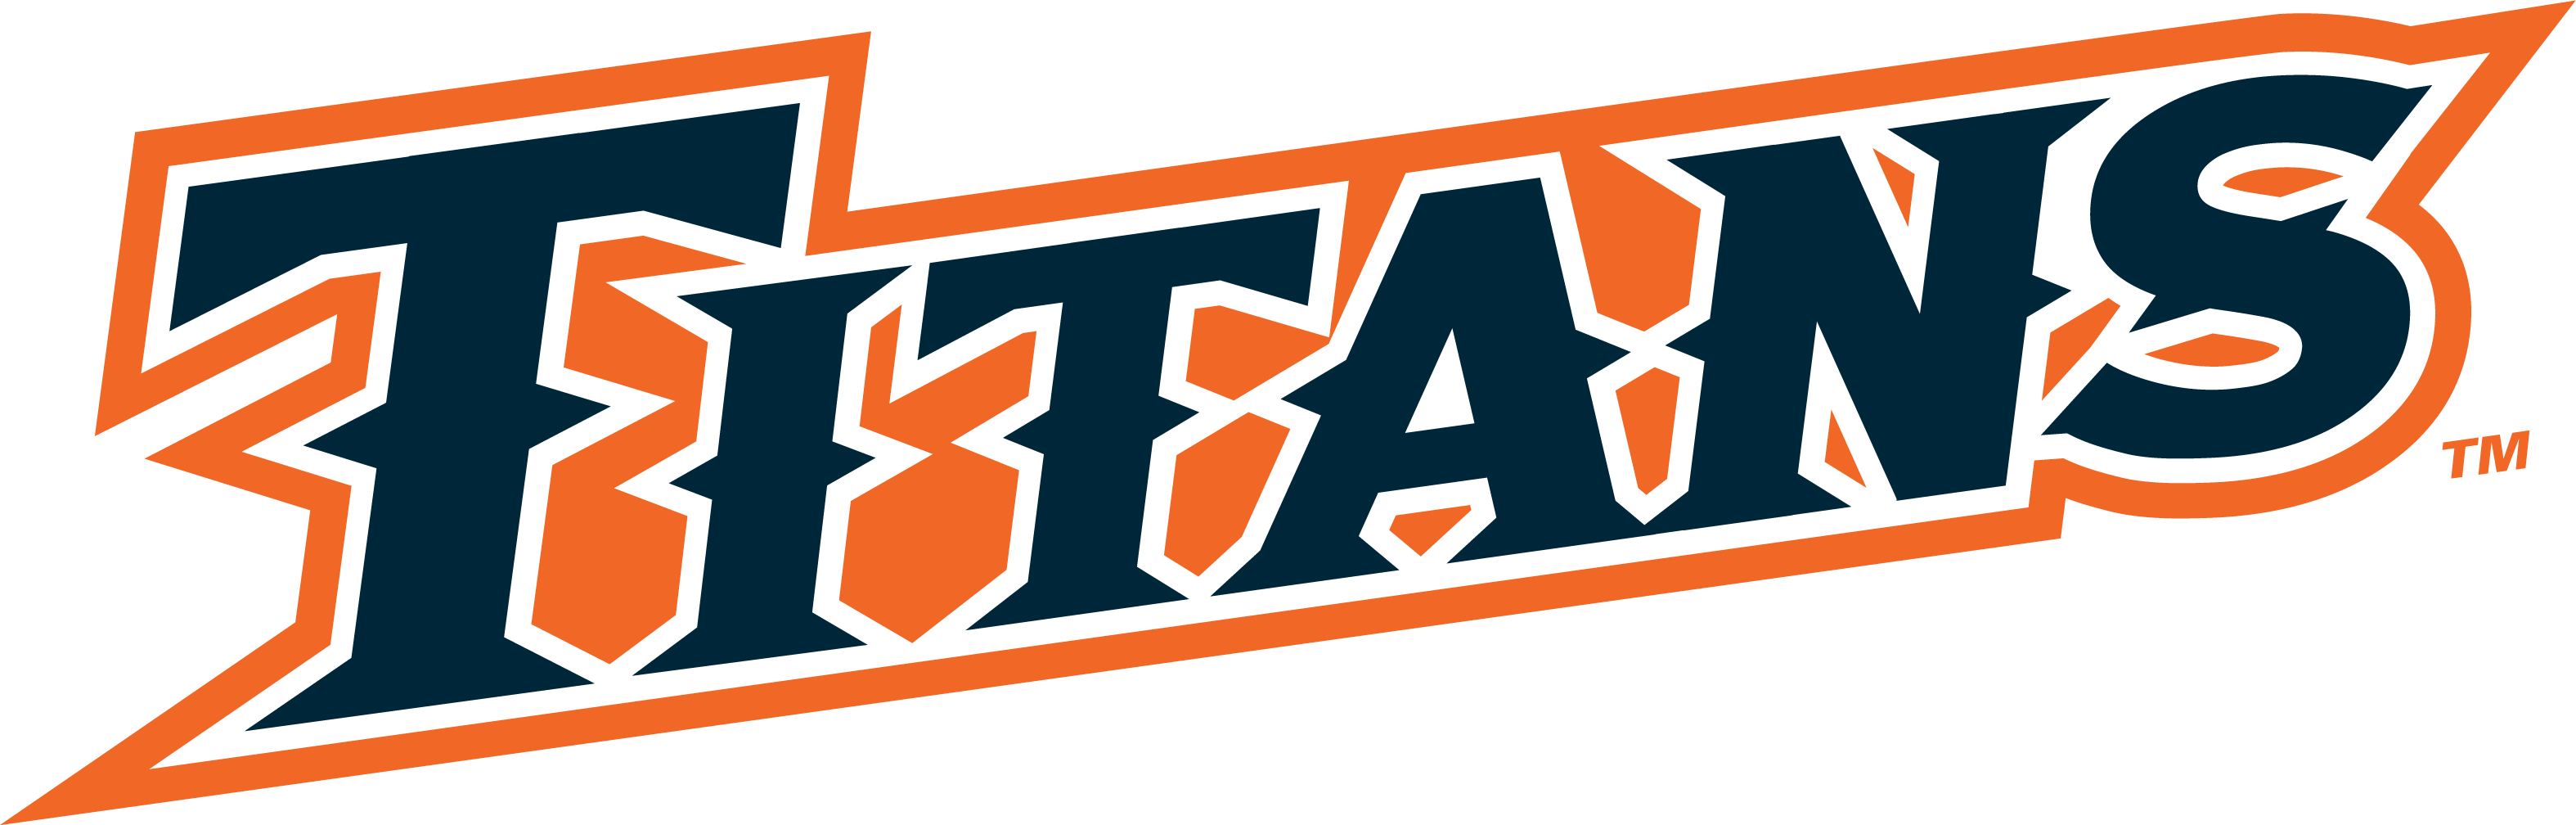 Athletics Titans logo